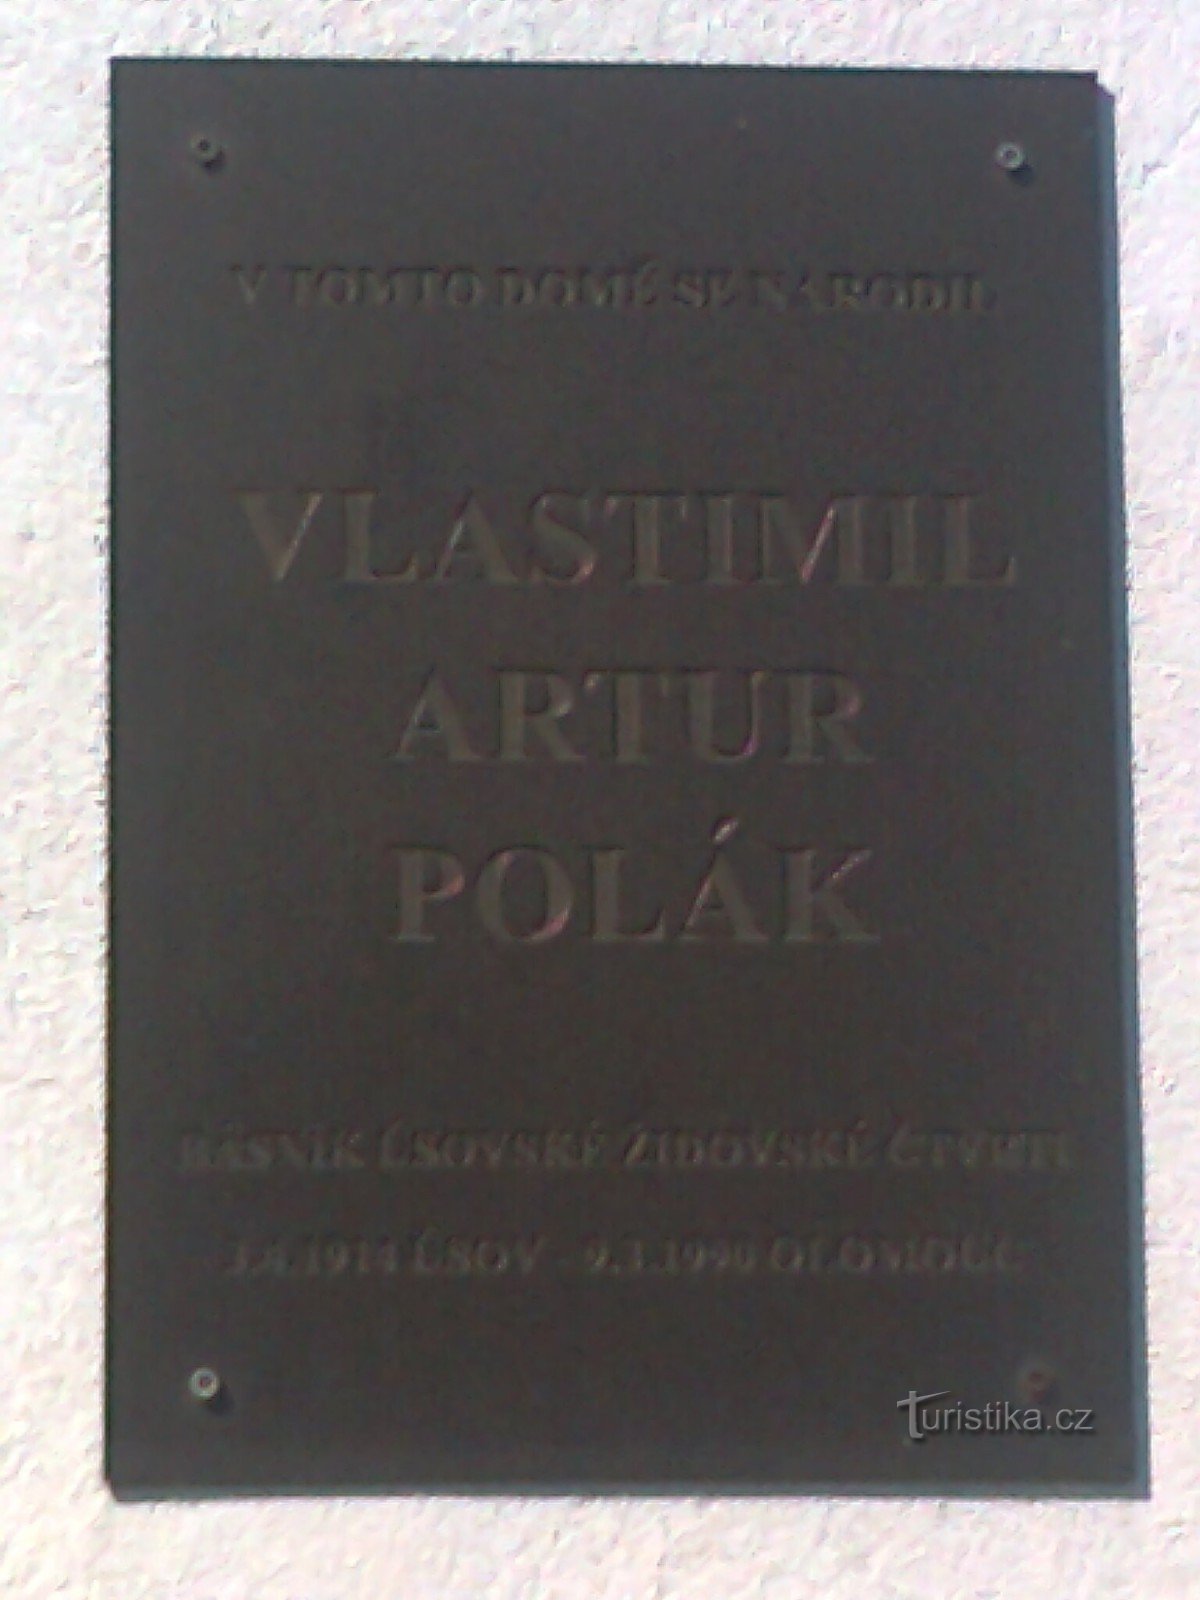 Úsov - fødestedet for digteren og romanforfatteren Vlastimil Artur Polák